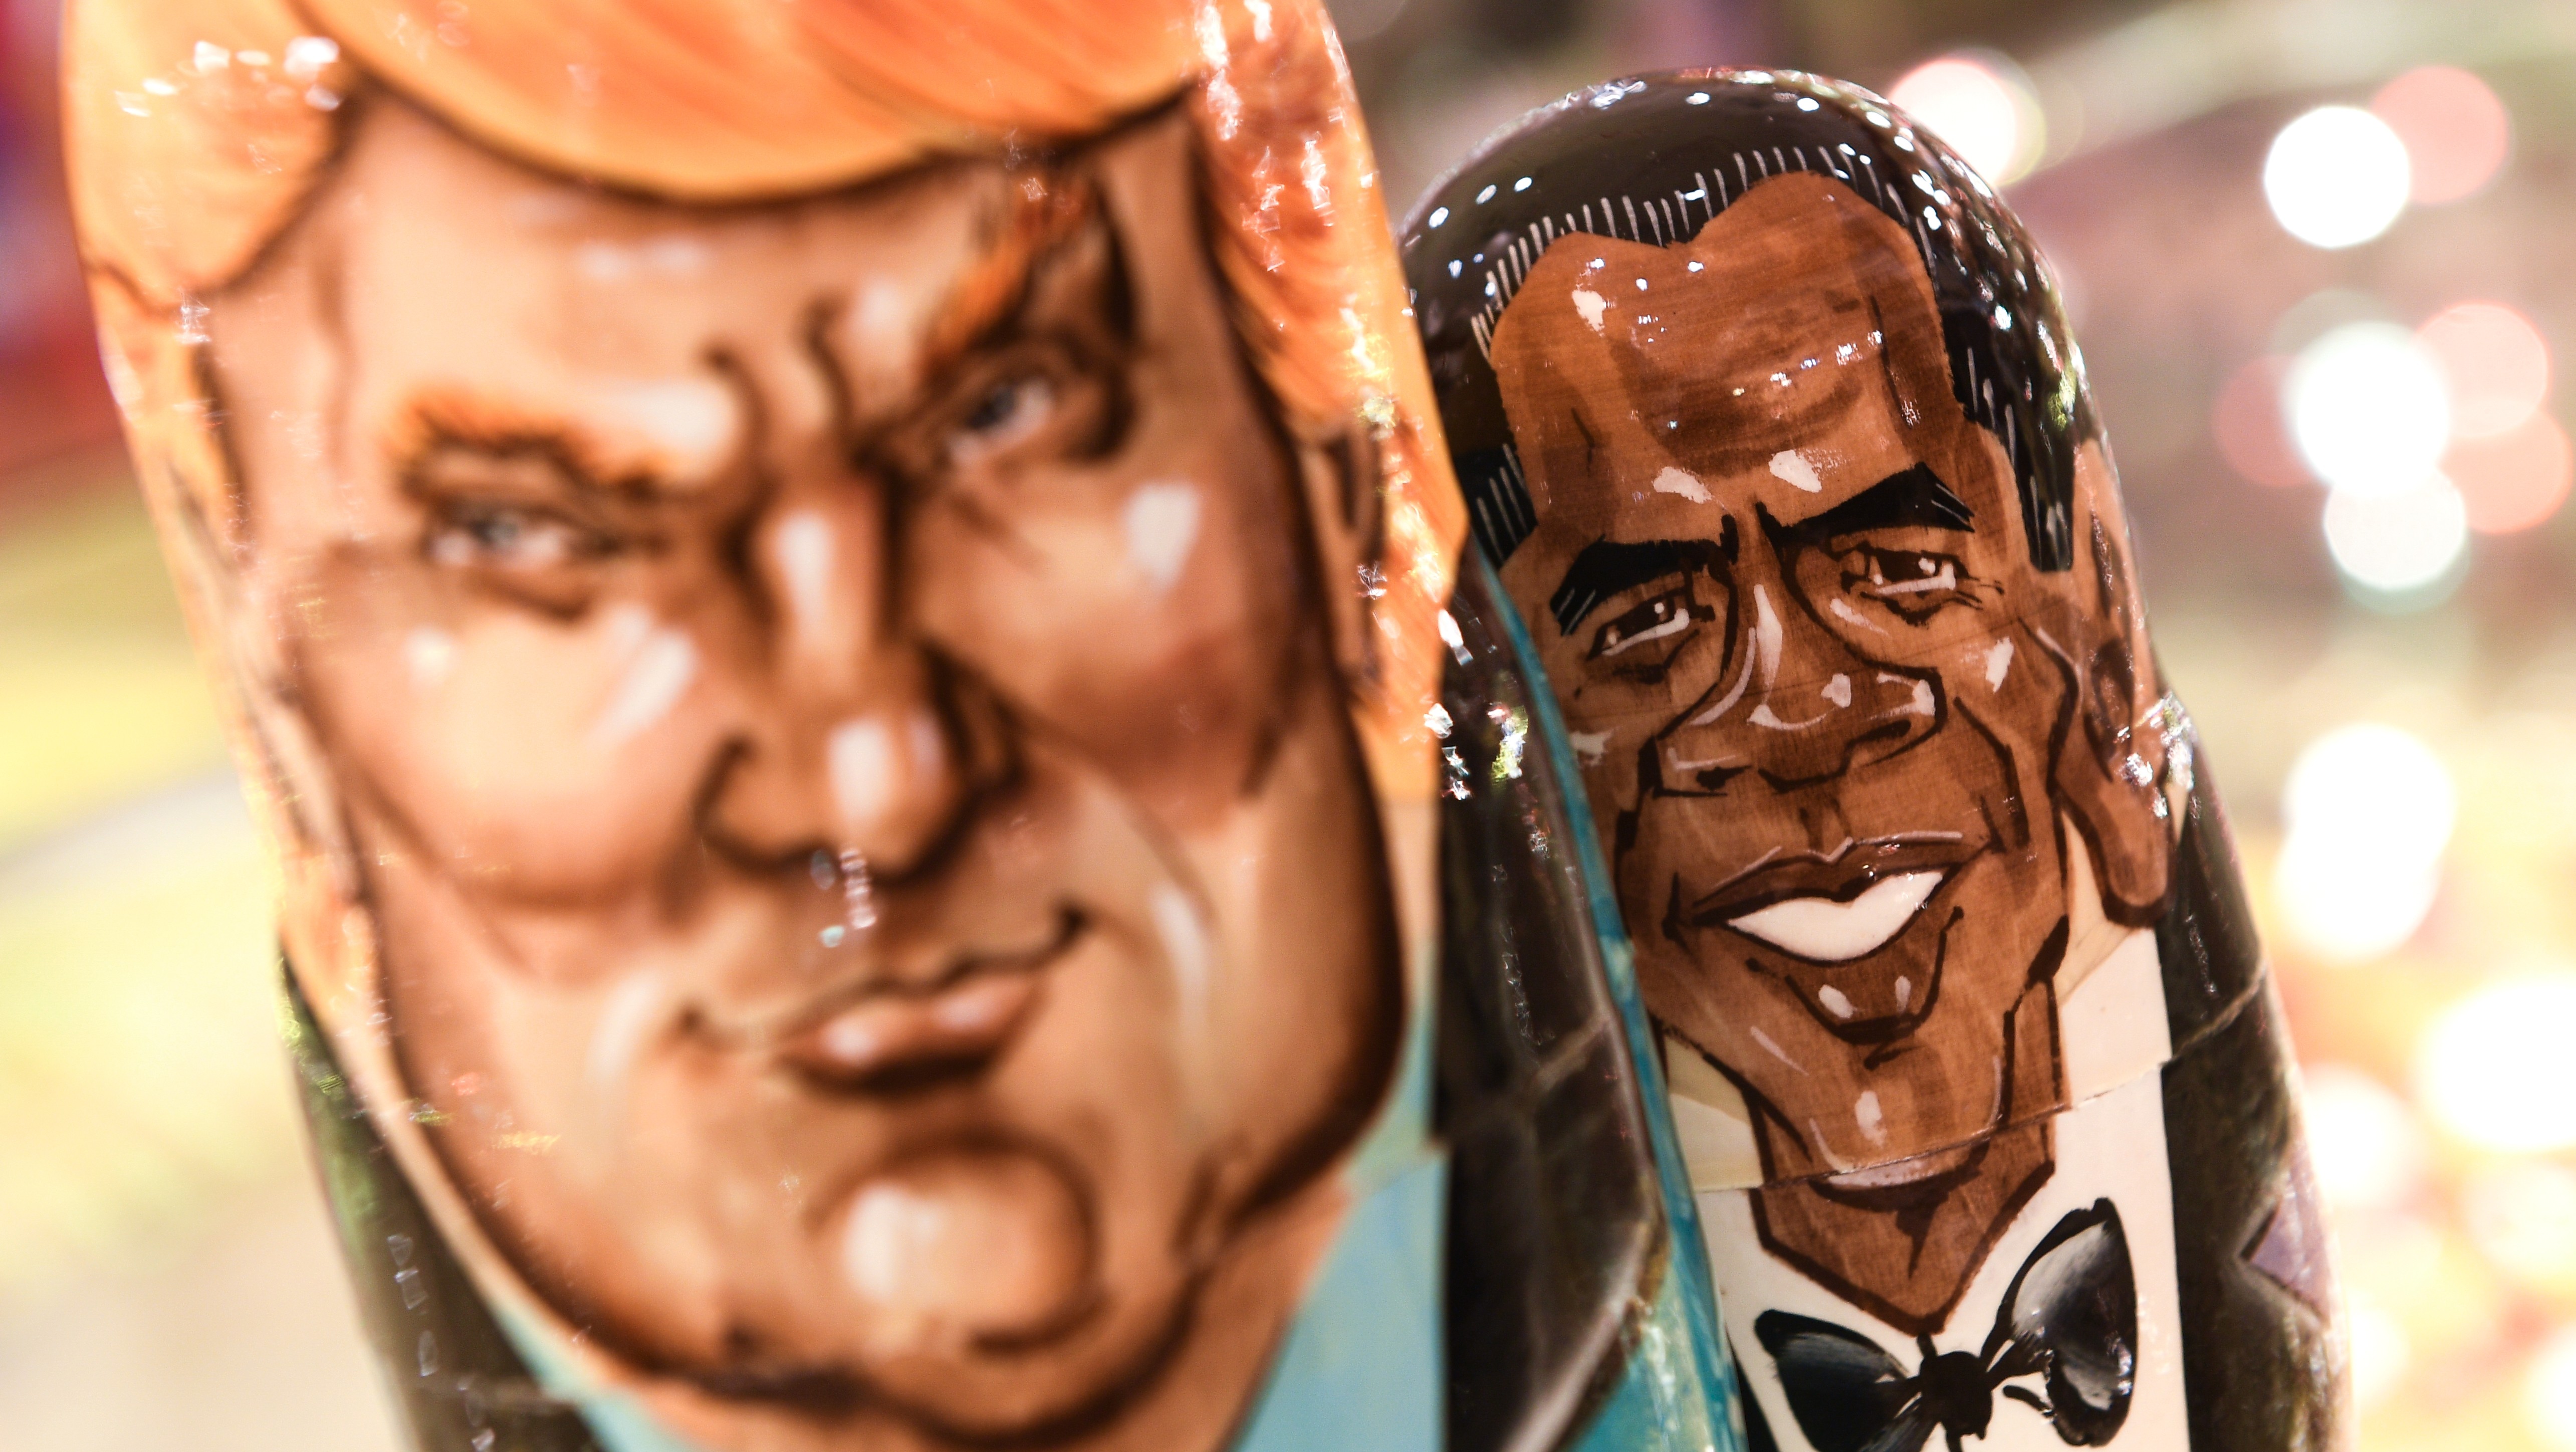 Матрешки с изображением президента США Дональда Трампа и бывшего президента Барака Обамы в сувенирном магазине в Москве. 
Фото: &copy; РИА Новости/Владимир Астапкович&nbsp;